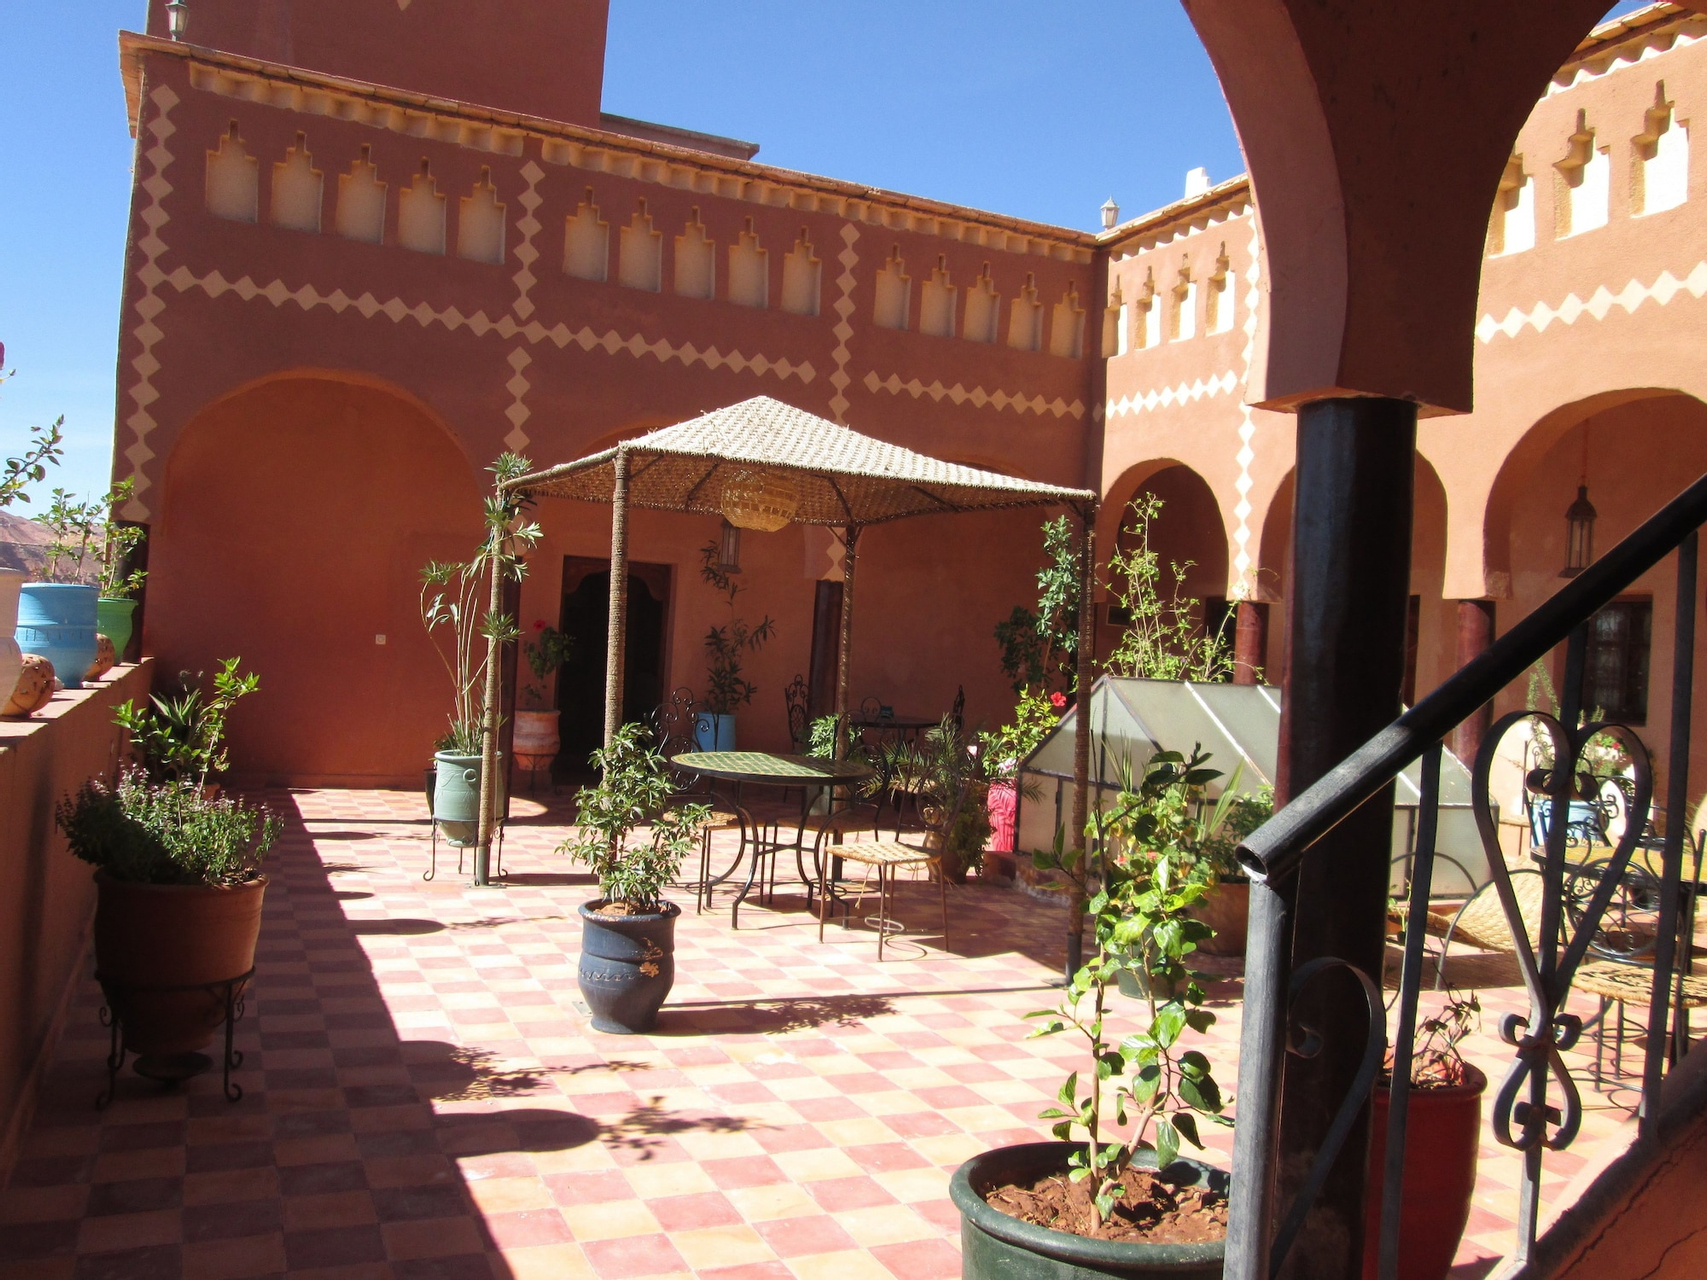 Exterior & Views, Kasbah Ounila, Ouarzazate